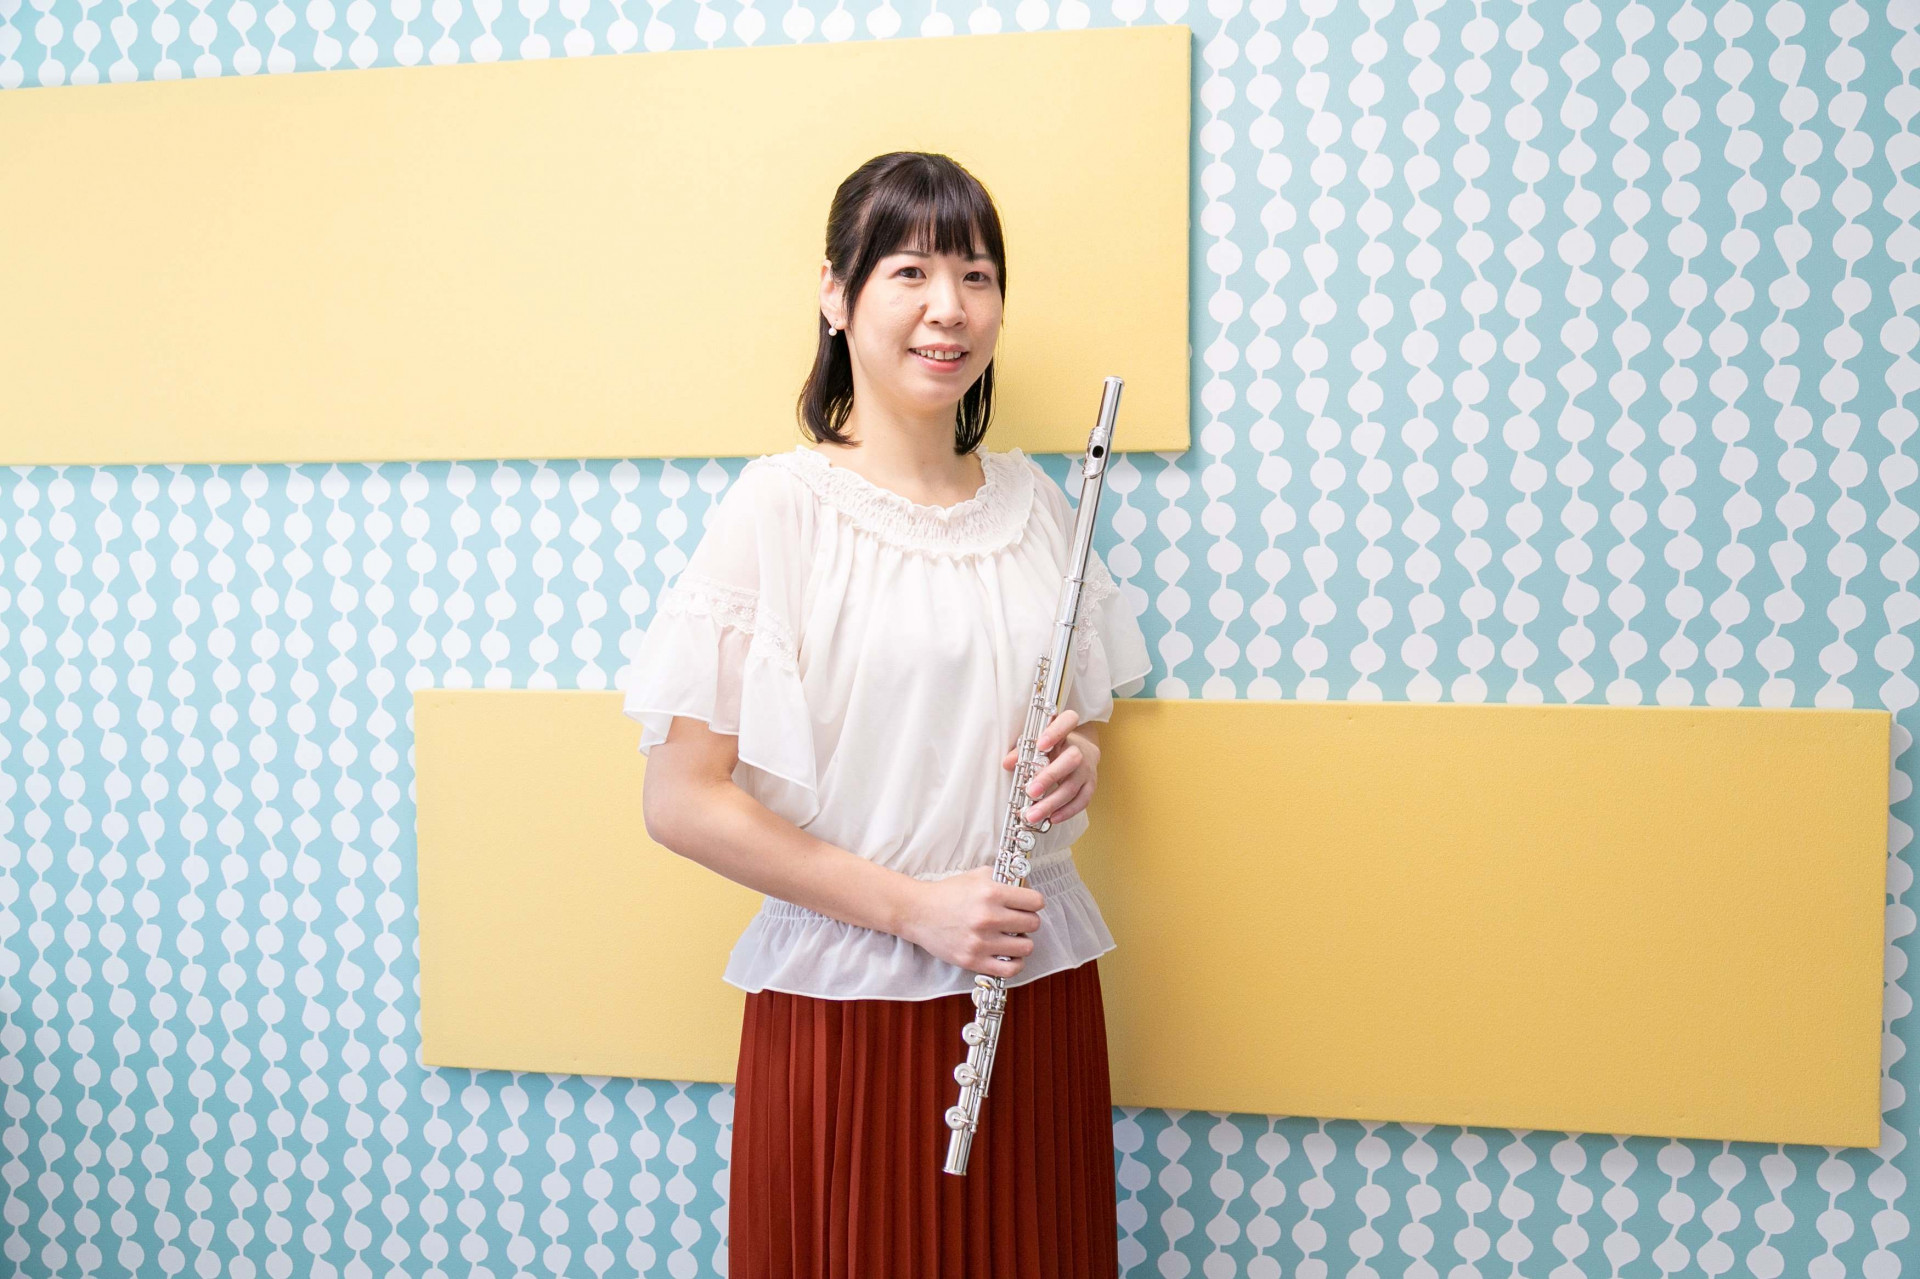 奈良で運営するフルート教室の講師は現役奏者として活躍中